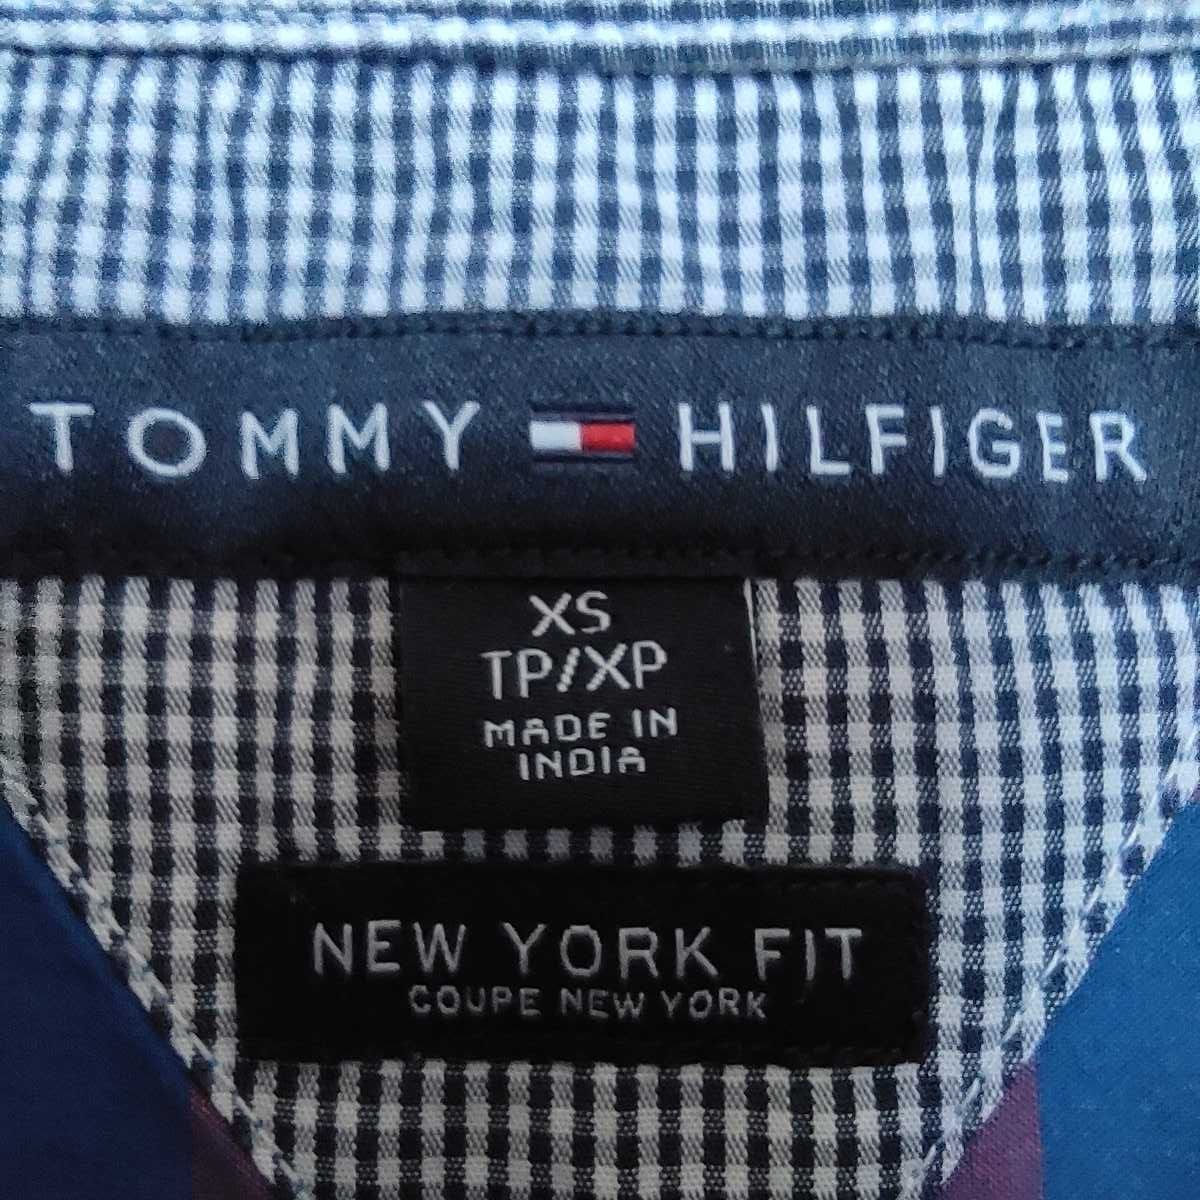 Koszula męska TOMMY HILFIGER - rozmiar XS - krótki rękaw